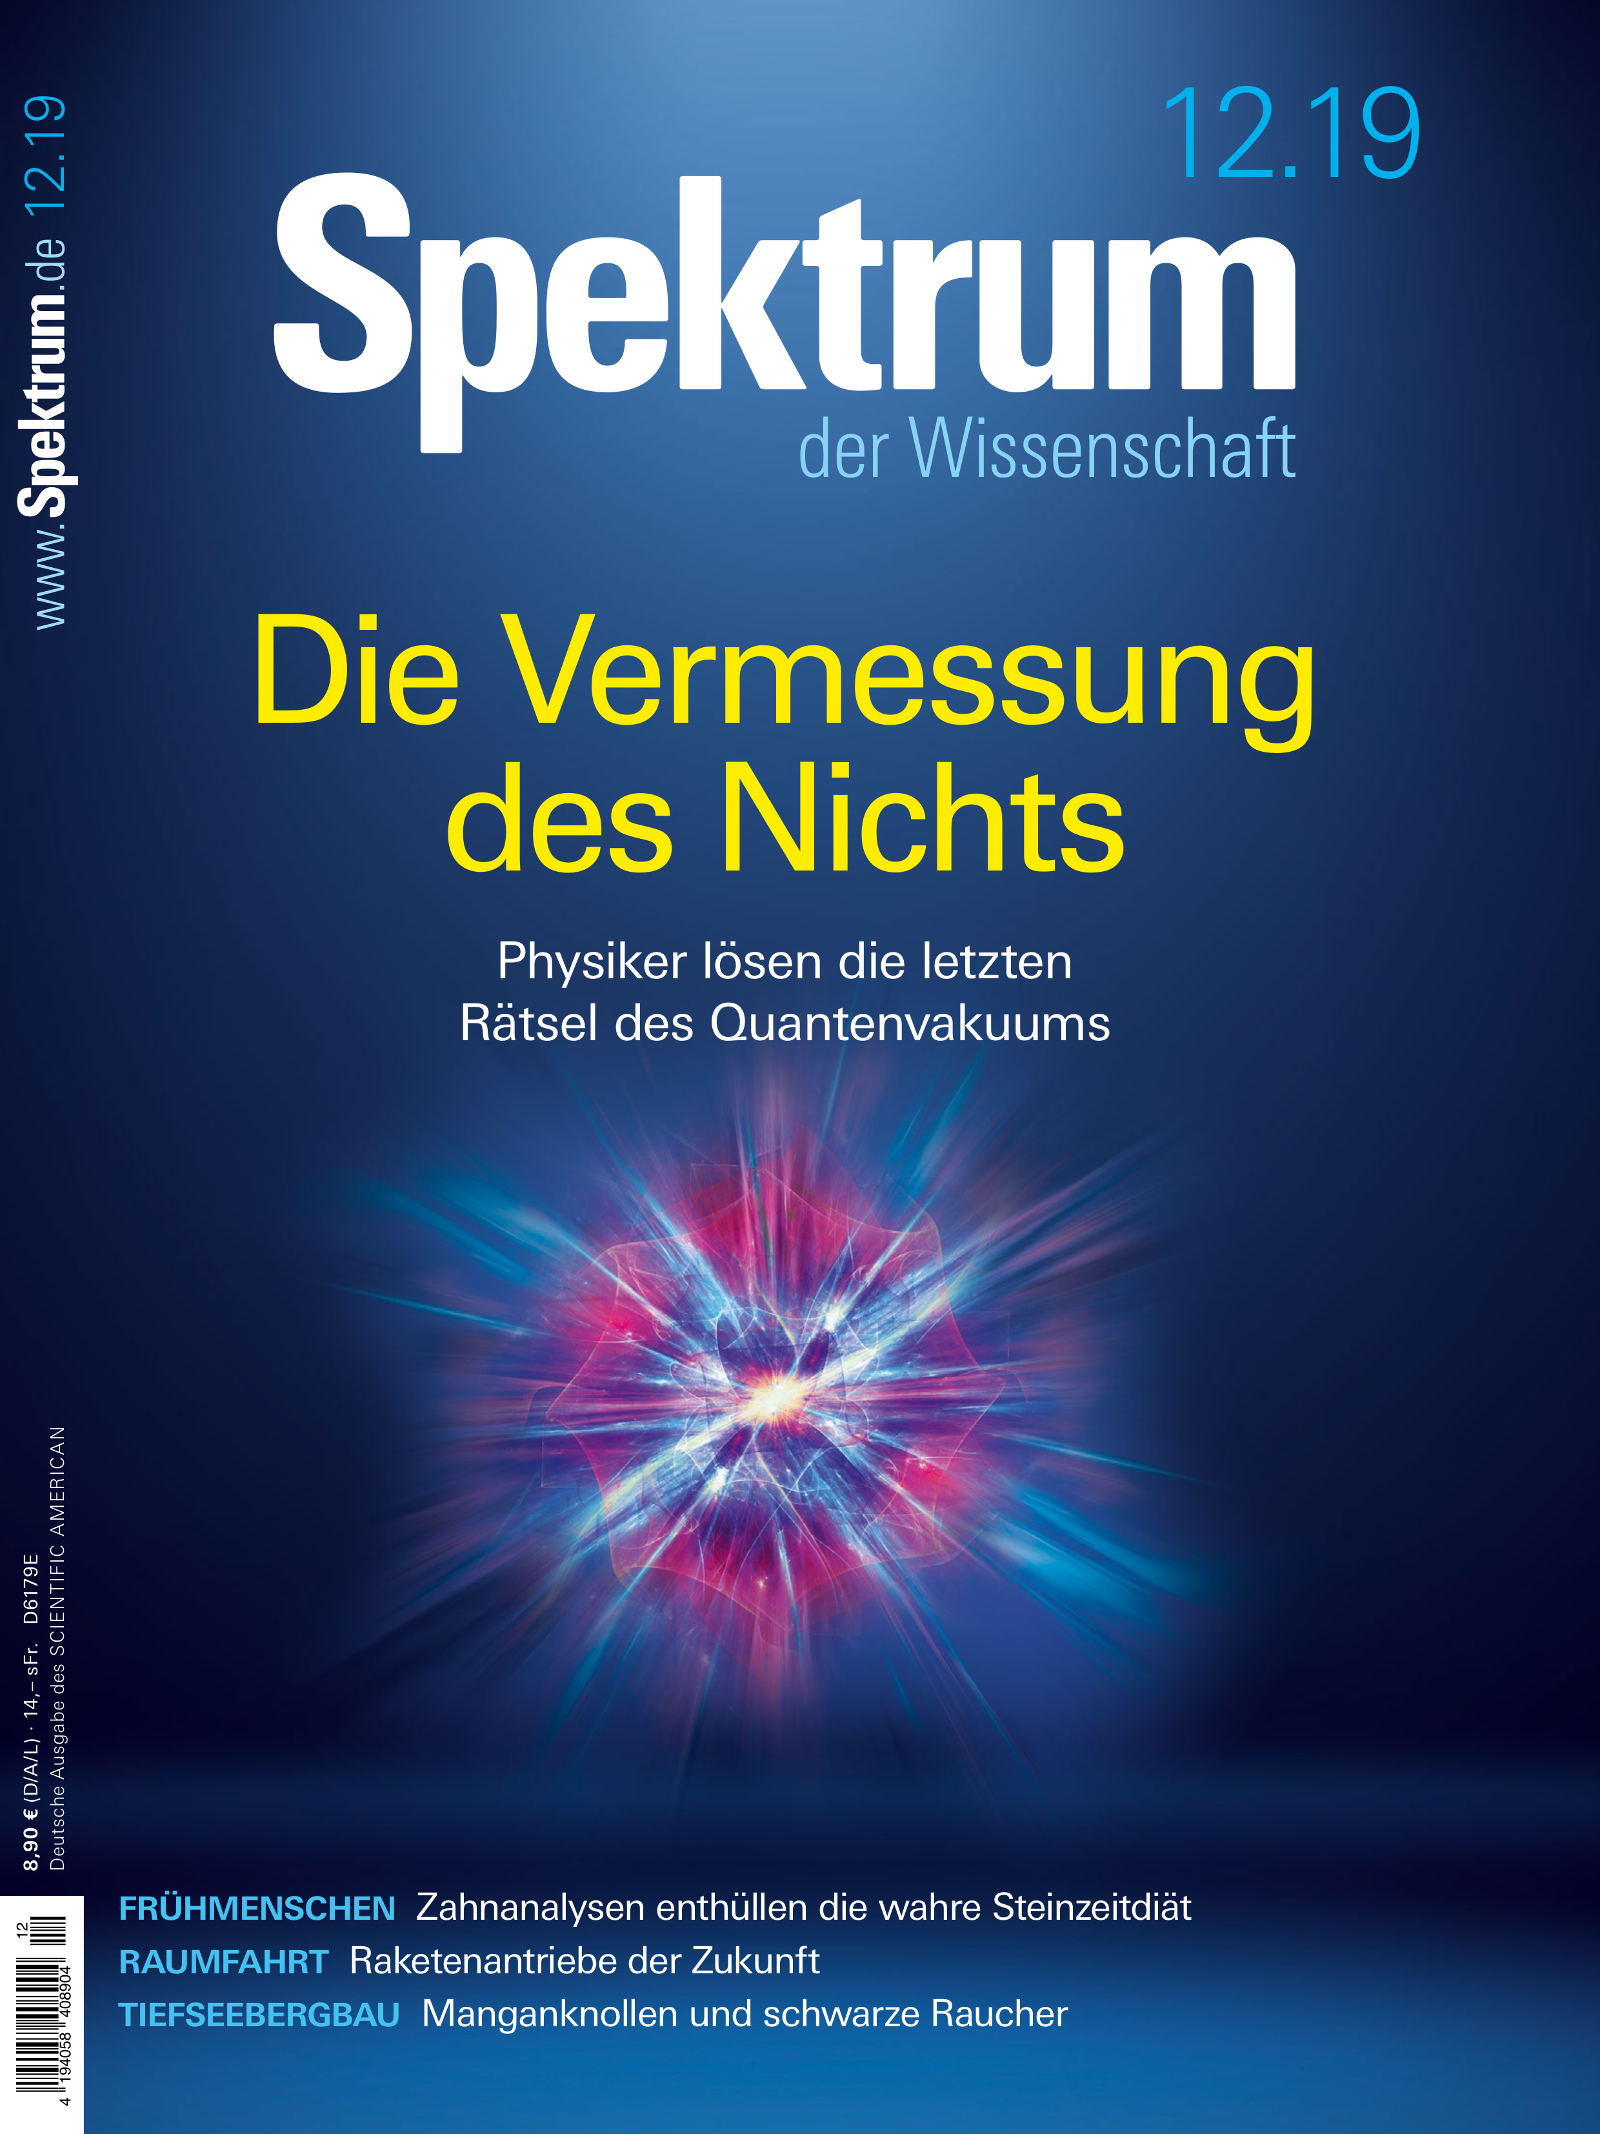 Spektrum der Wissenschaft 12/2019 Cover